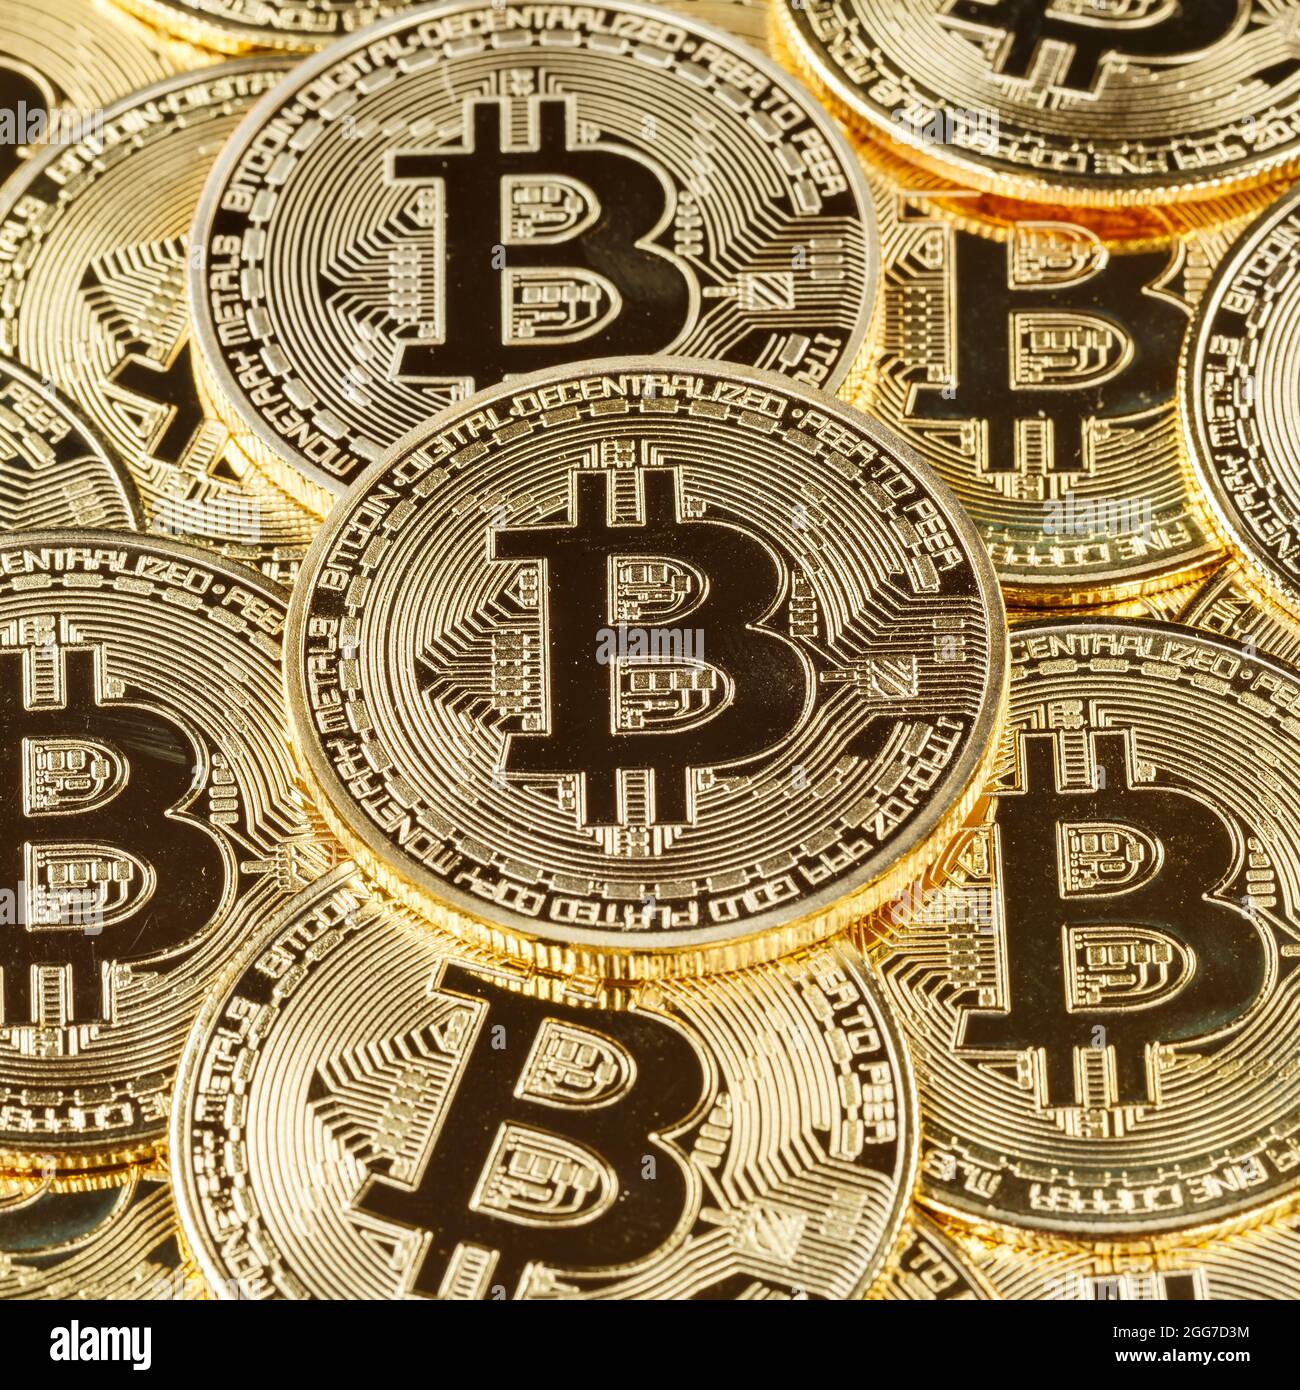 Bitcoin Krypto Währung online bezahlen digitales Geld Kryptowährung Geschäft Finanziert quadratische Bit-Münze Stockfoto